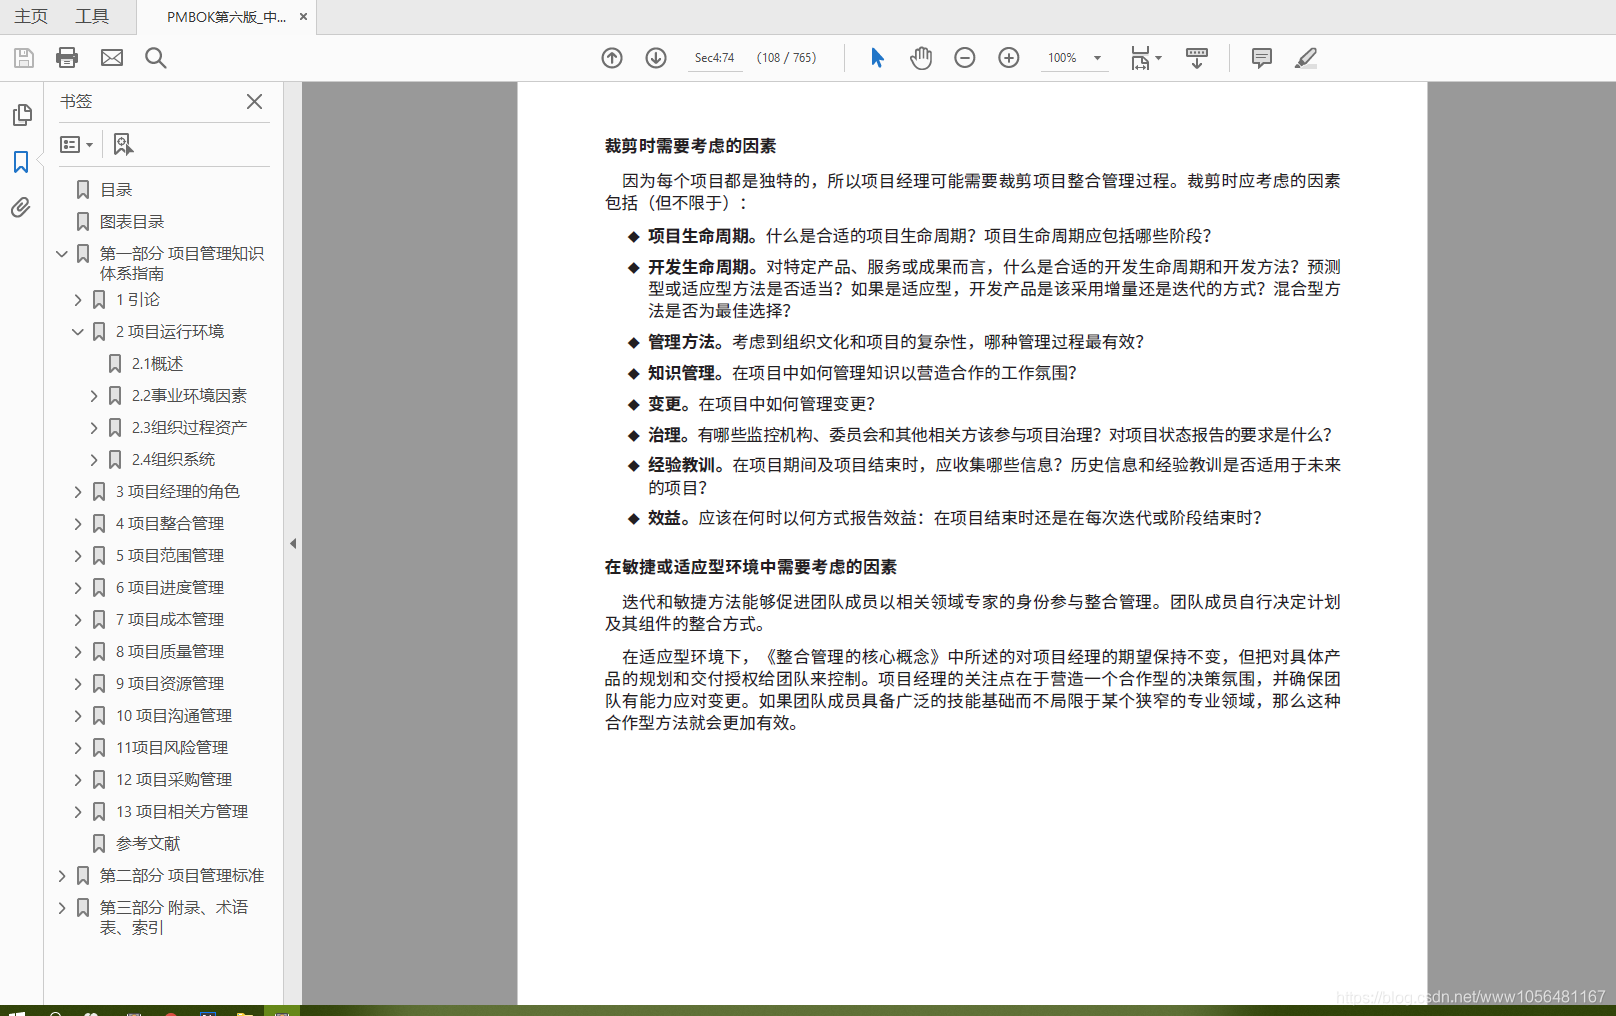 pmbok中文第六版(带目录)_pmbok第六版pdf下载-CSDN博客